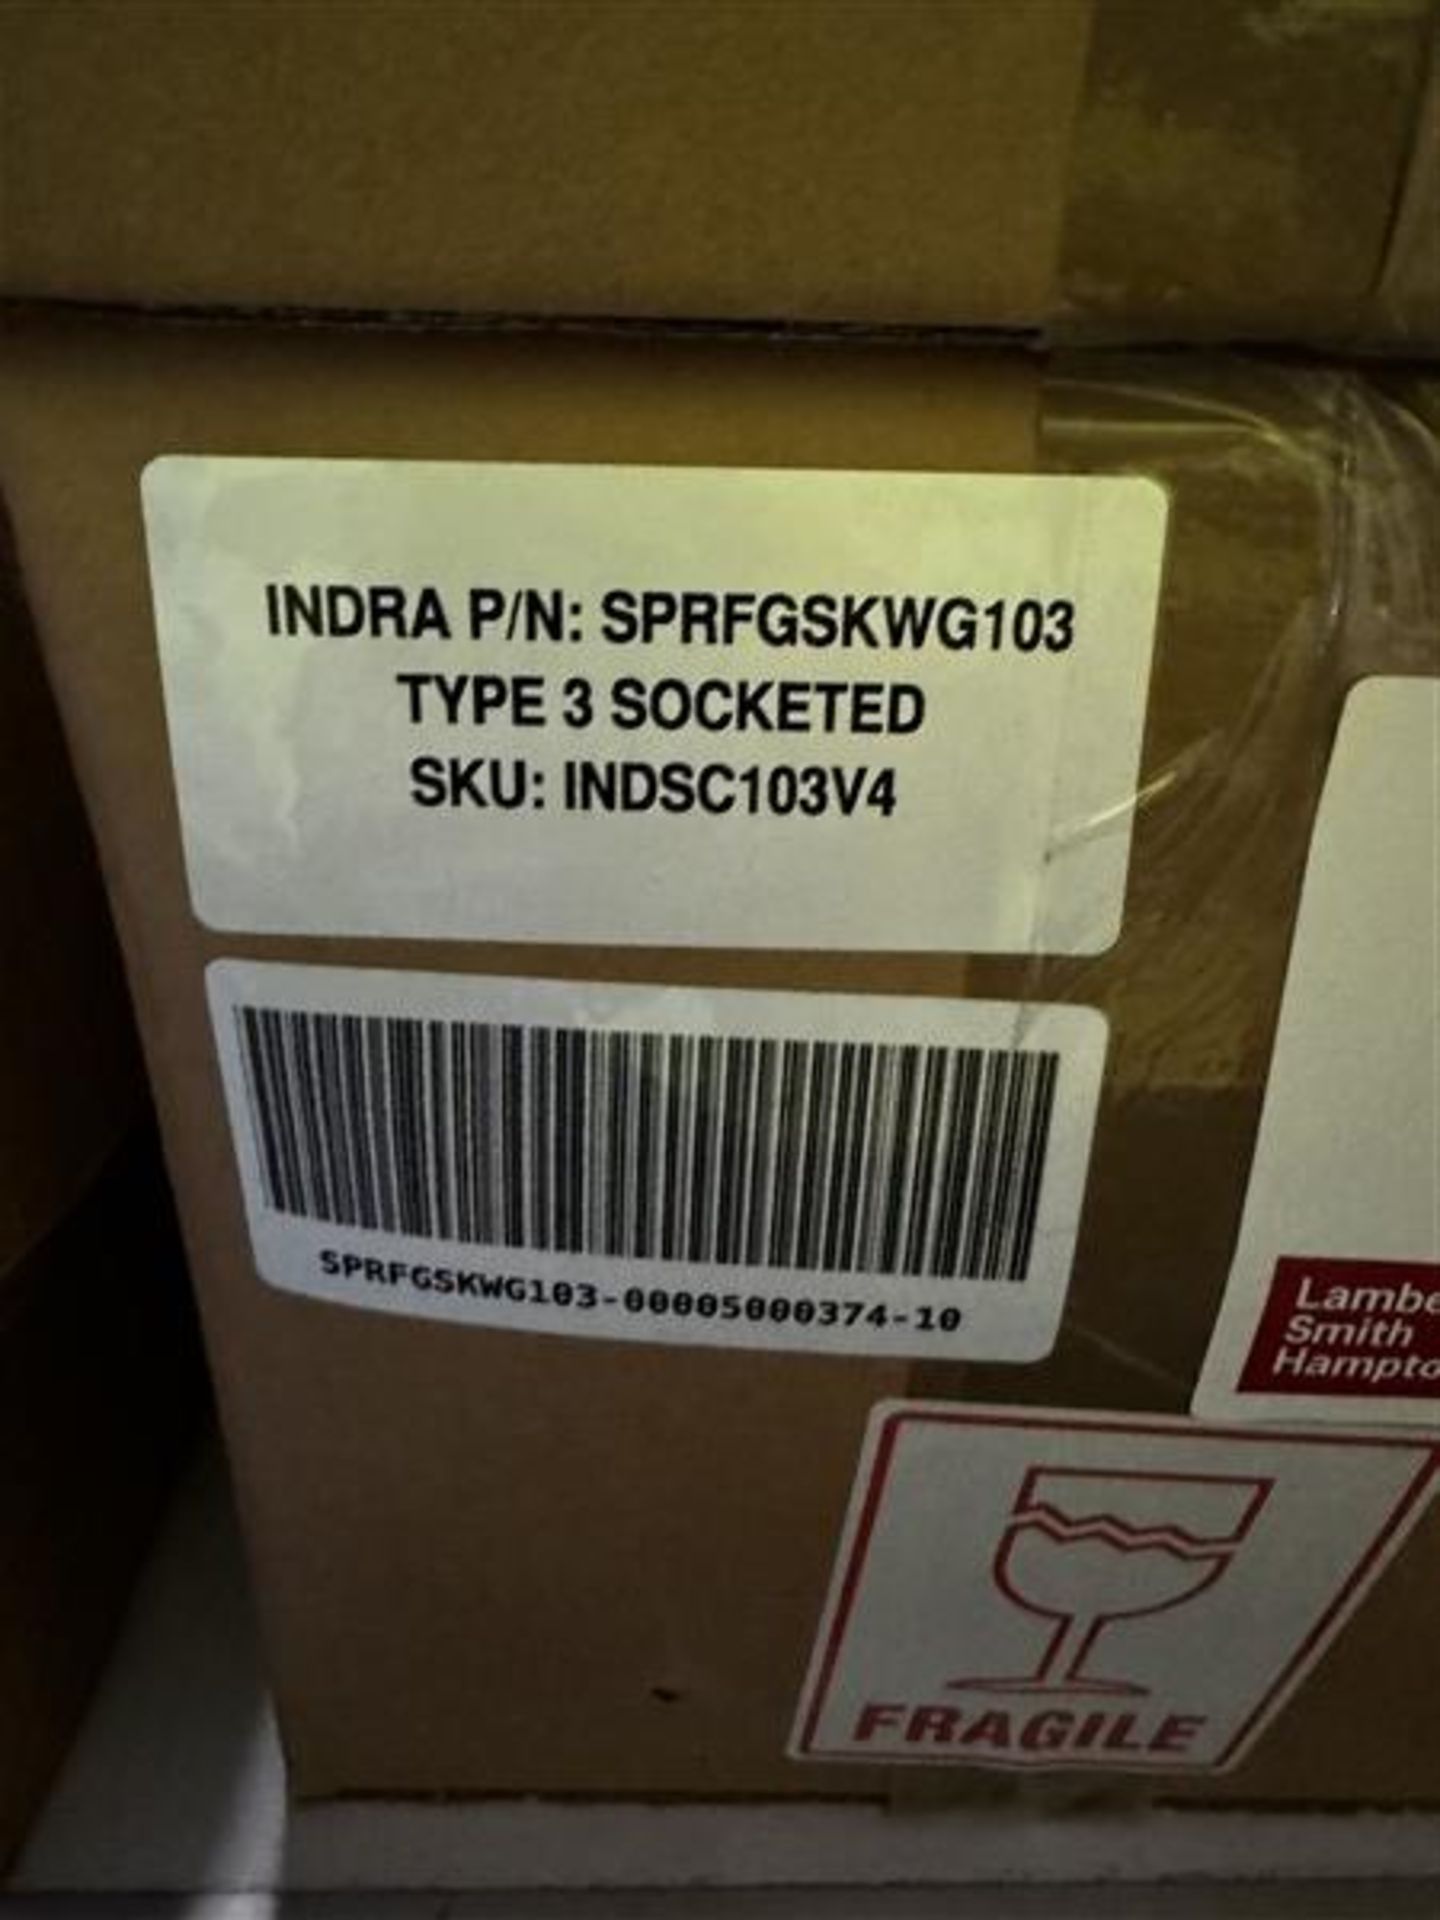 Indra Type 3 socketed electric car charger, part no. SPRFGSKWG103, SKU: INDSC103V4